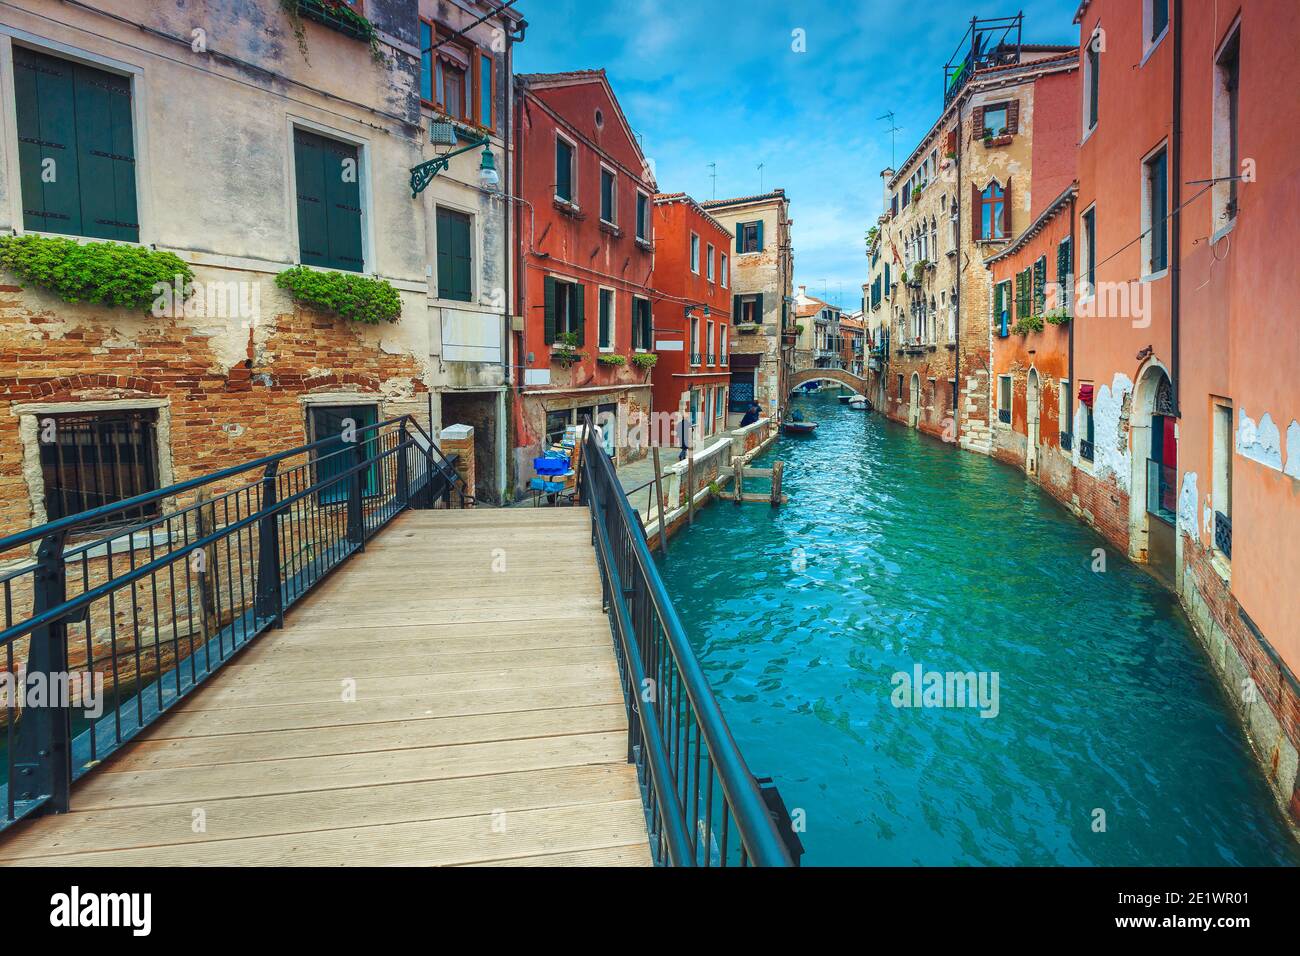 Schmaler Wasserkanal mit Brücken und bunten alten Gebäuden. Großartige Reise- und Touristendestination, Venedig, Italien, Europa Stockfoto